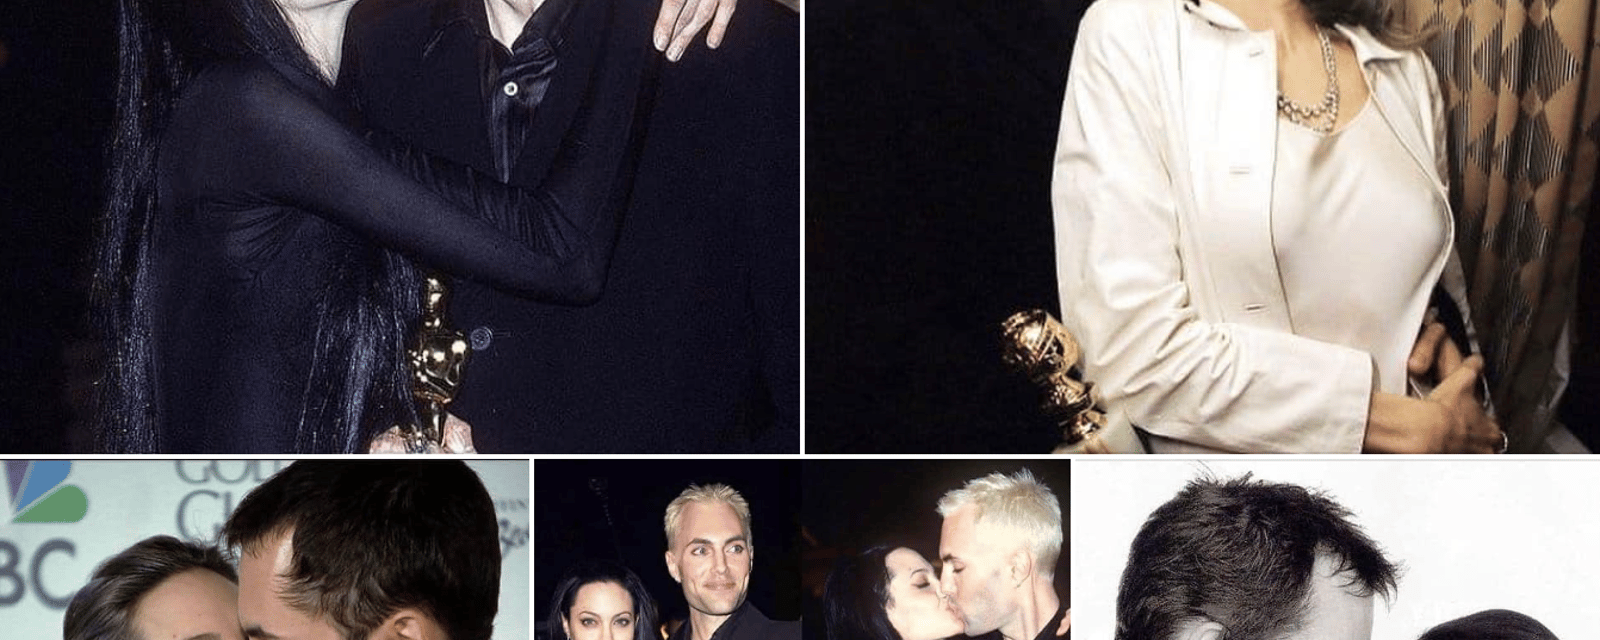 Des photos d'Angelina Jolie qui embrasse son frère refont surface et les commentaires sont nombreux